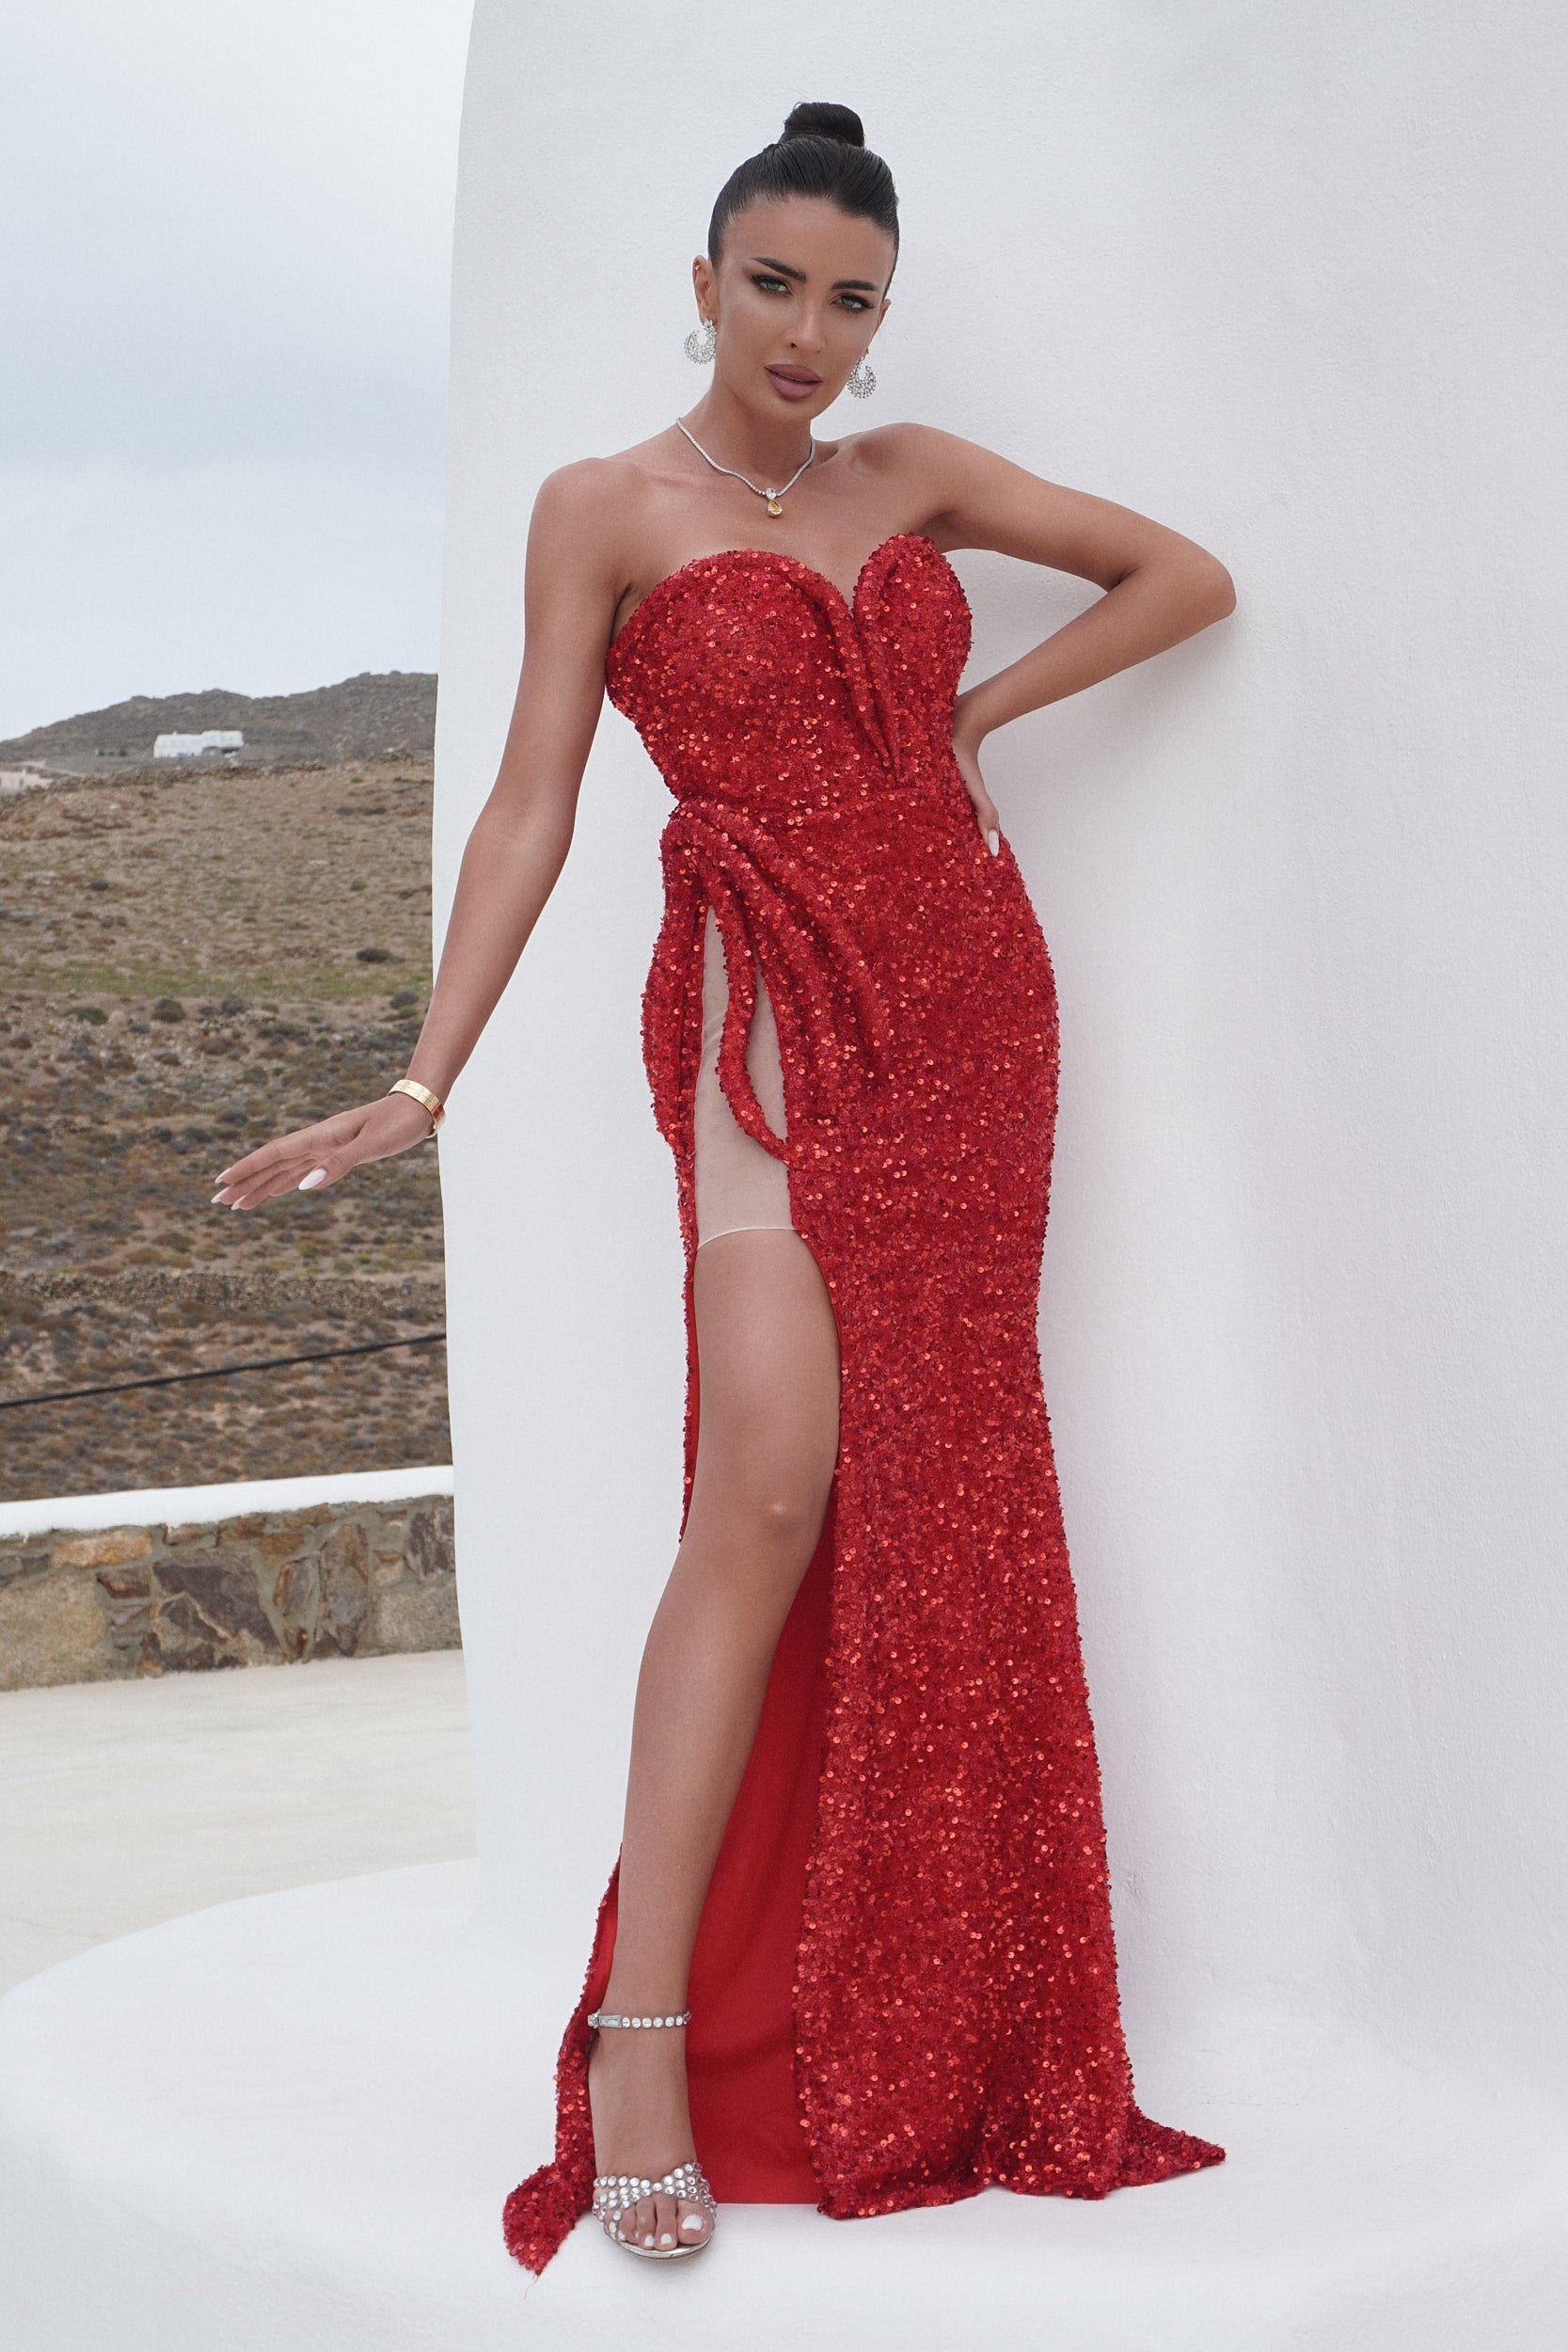 Romera Bogas hosszú piros női ruha